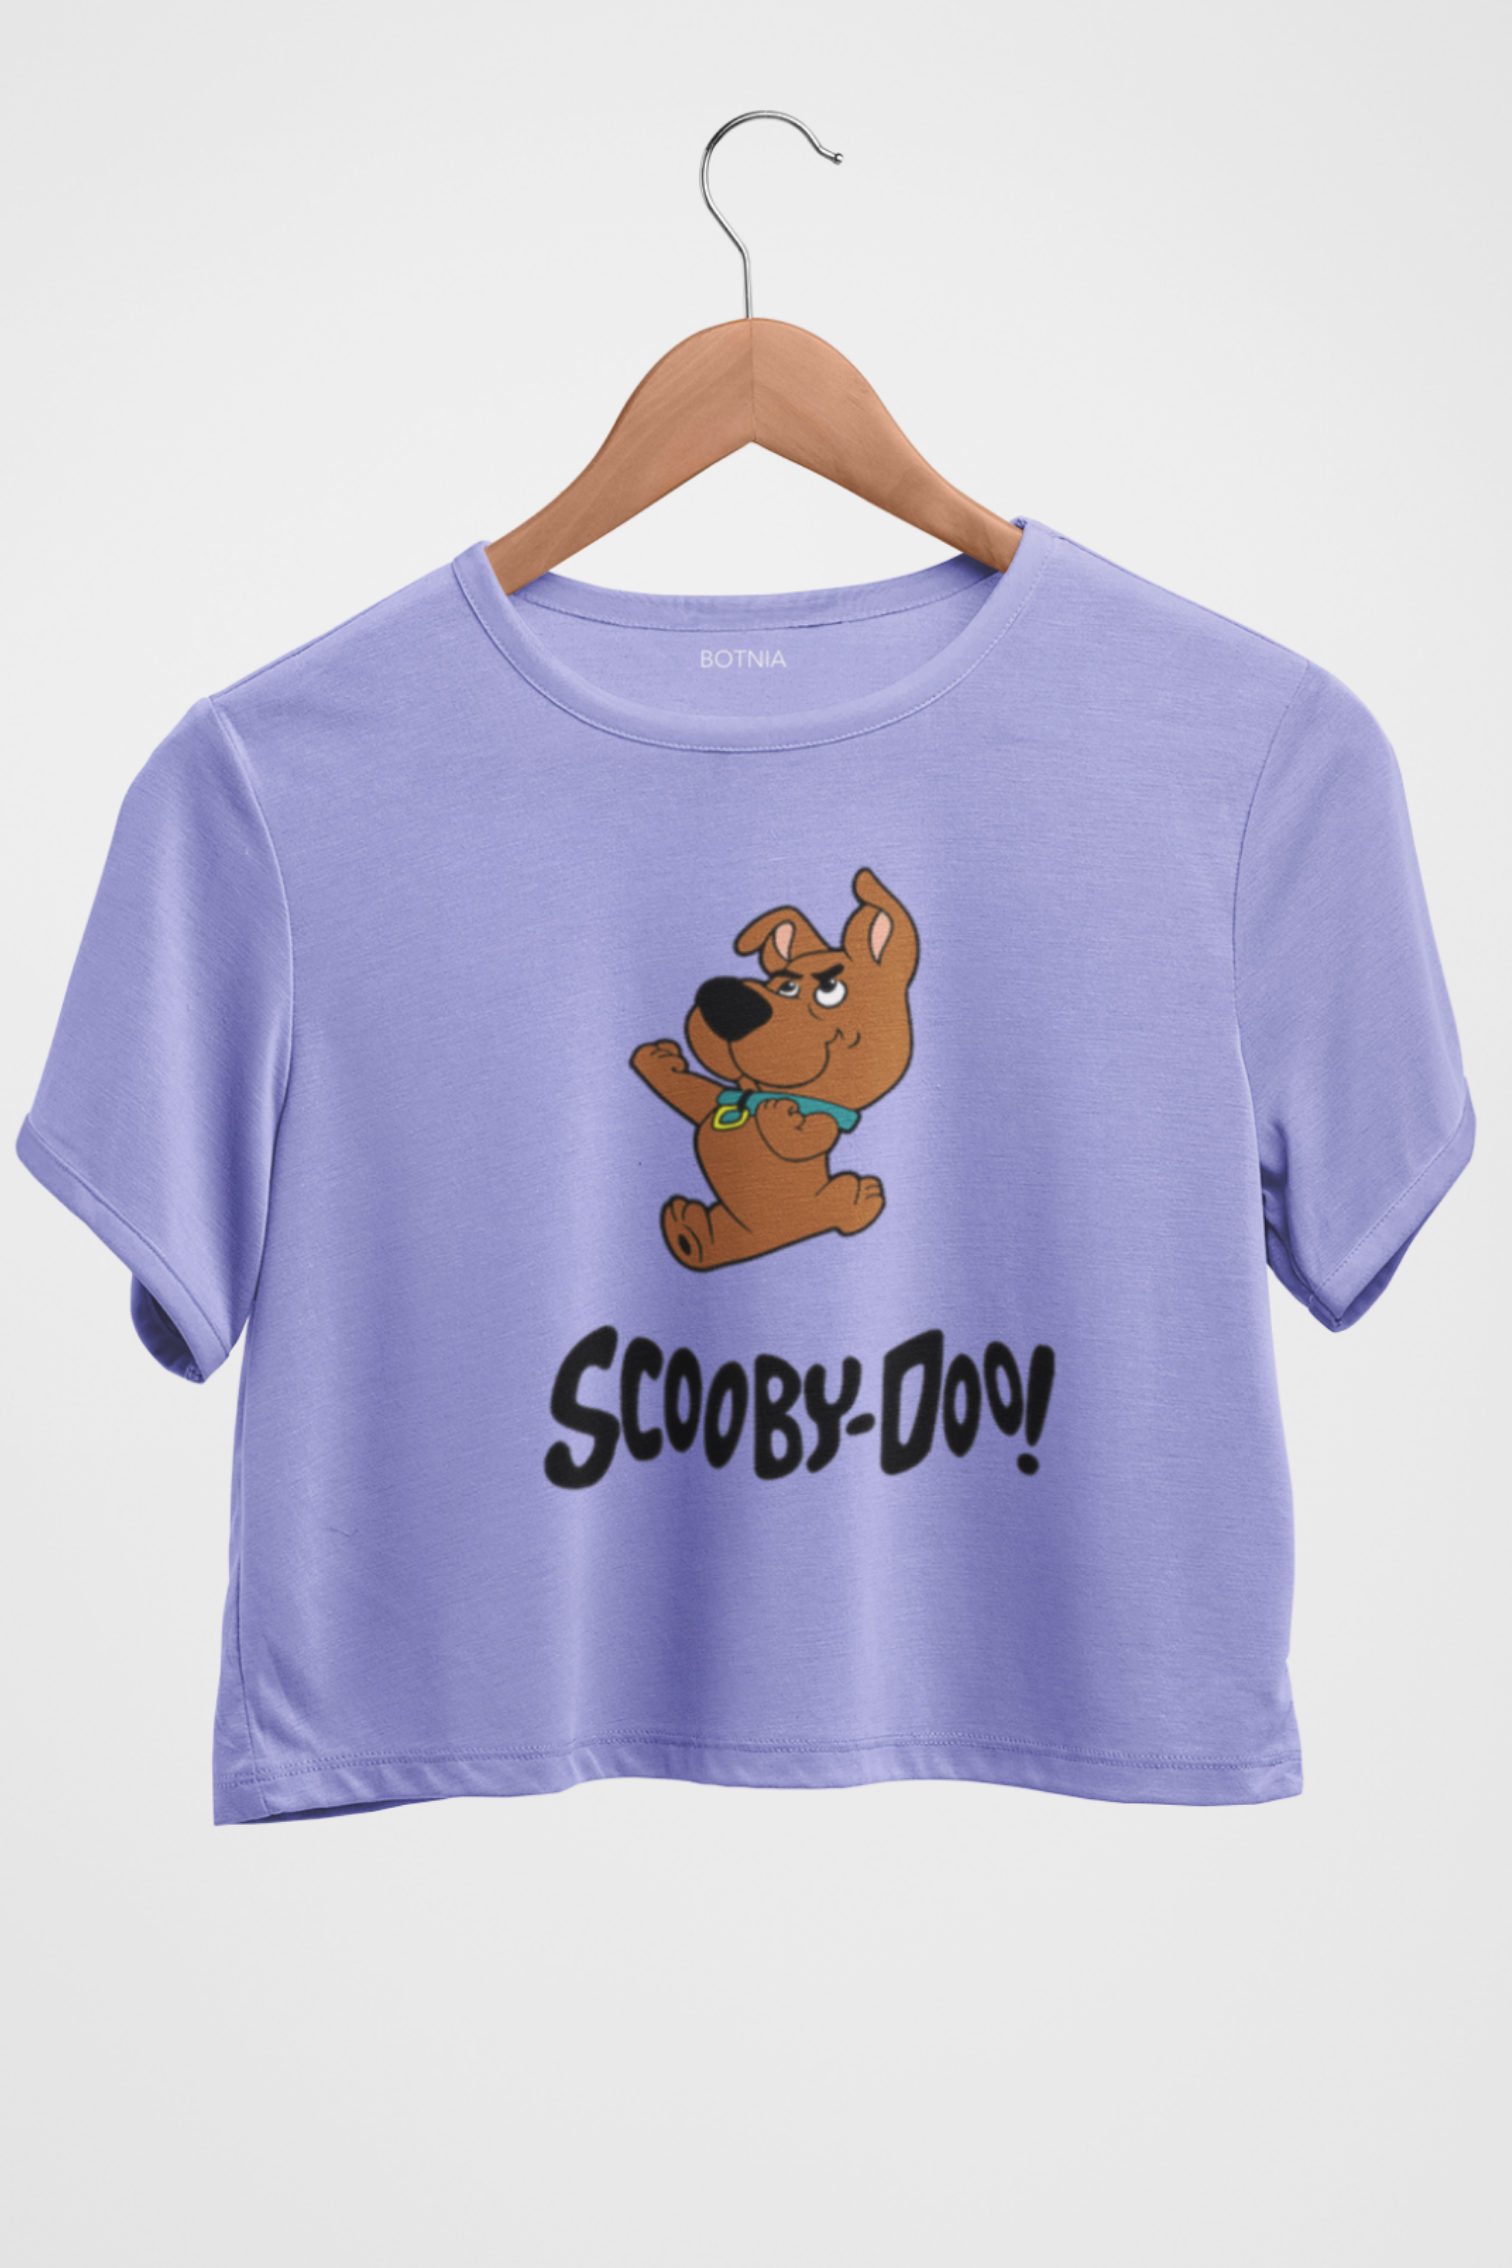 Scooby Doo -Crop Top